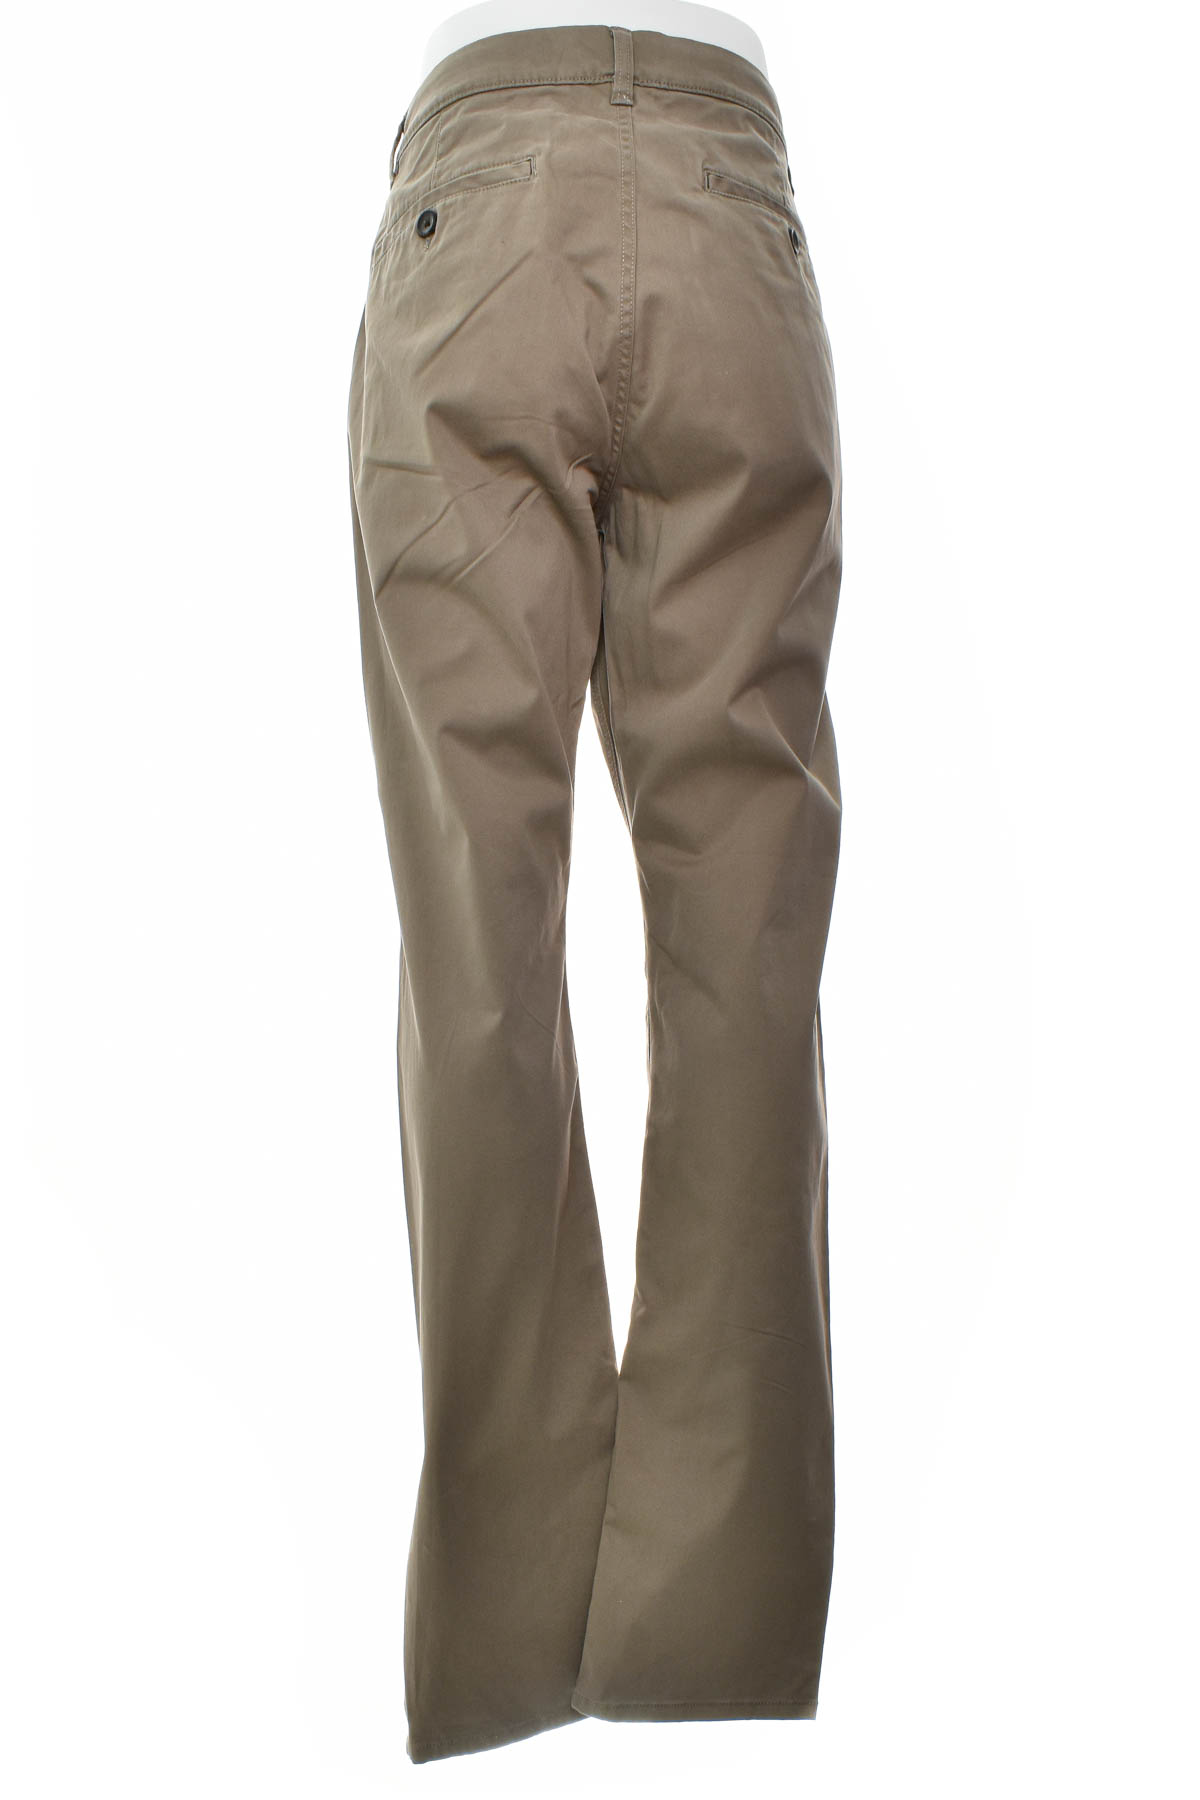 Pantalon pentru bărbați - TOM TAILOR - 1